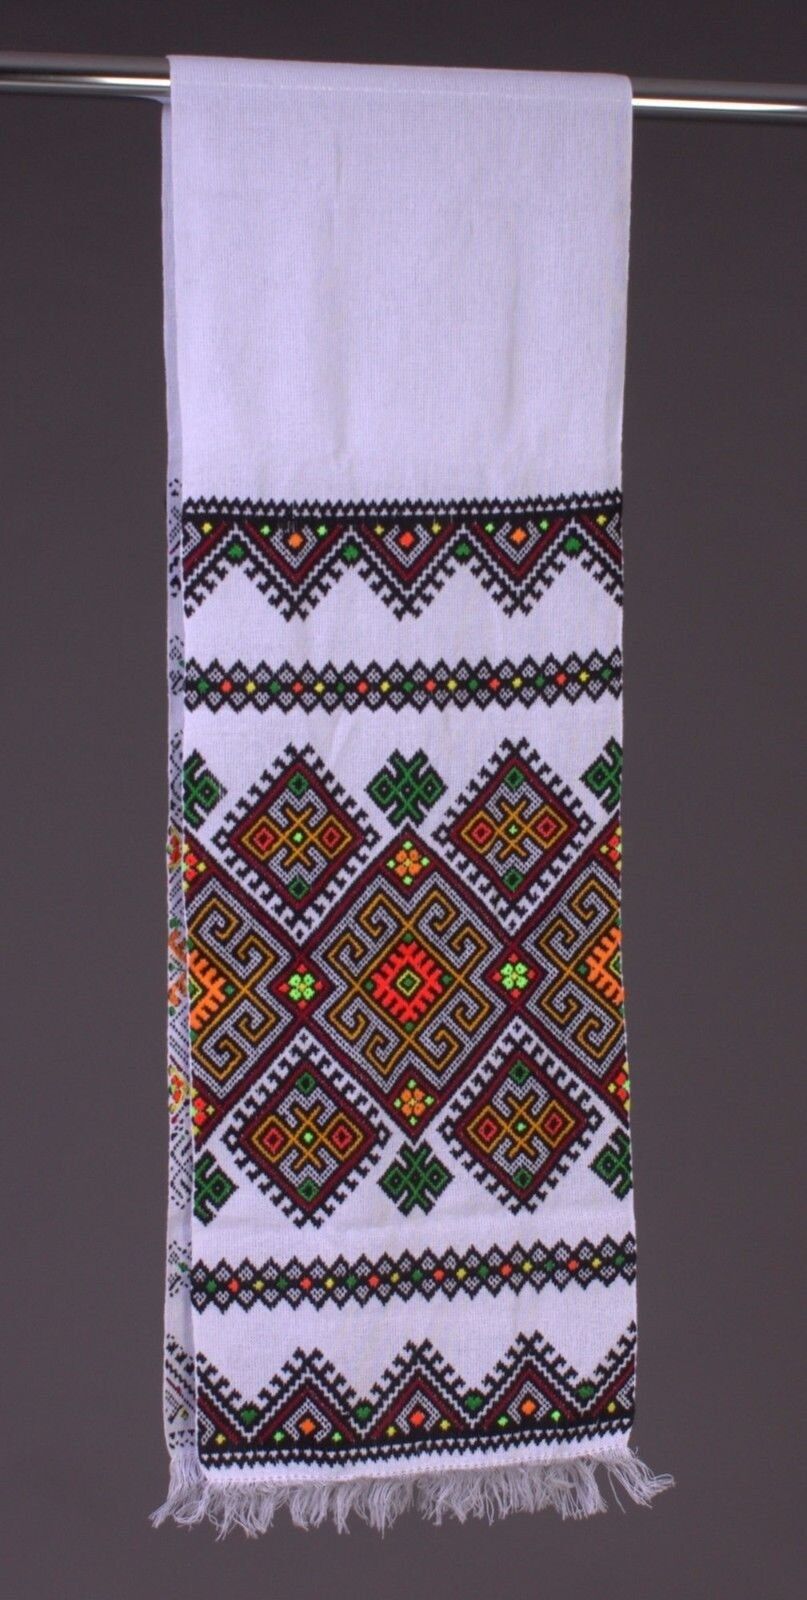 Rushnyk Wedding - Ukrainian Embroidered Towels - Rushnik Handmade Art Accesso...